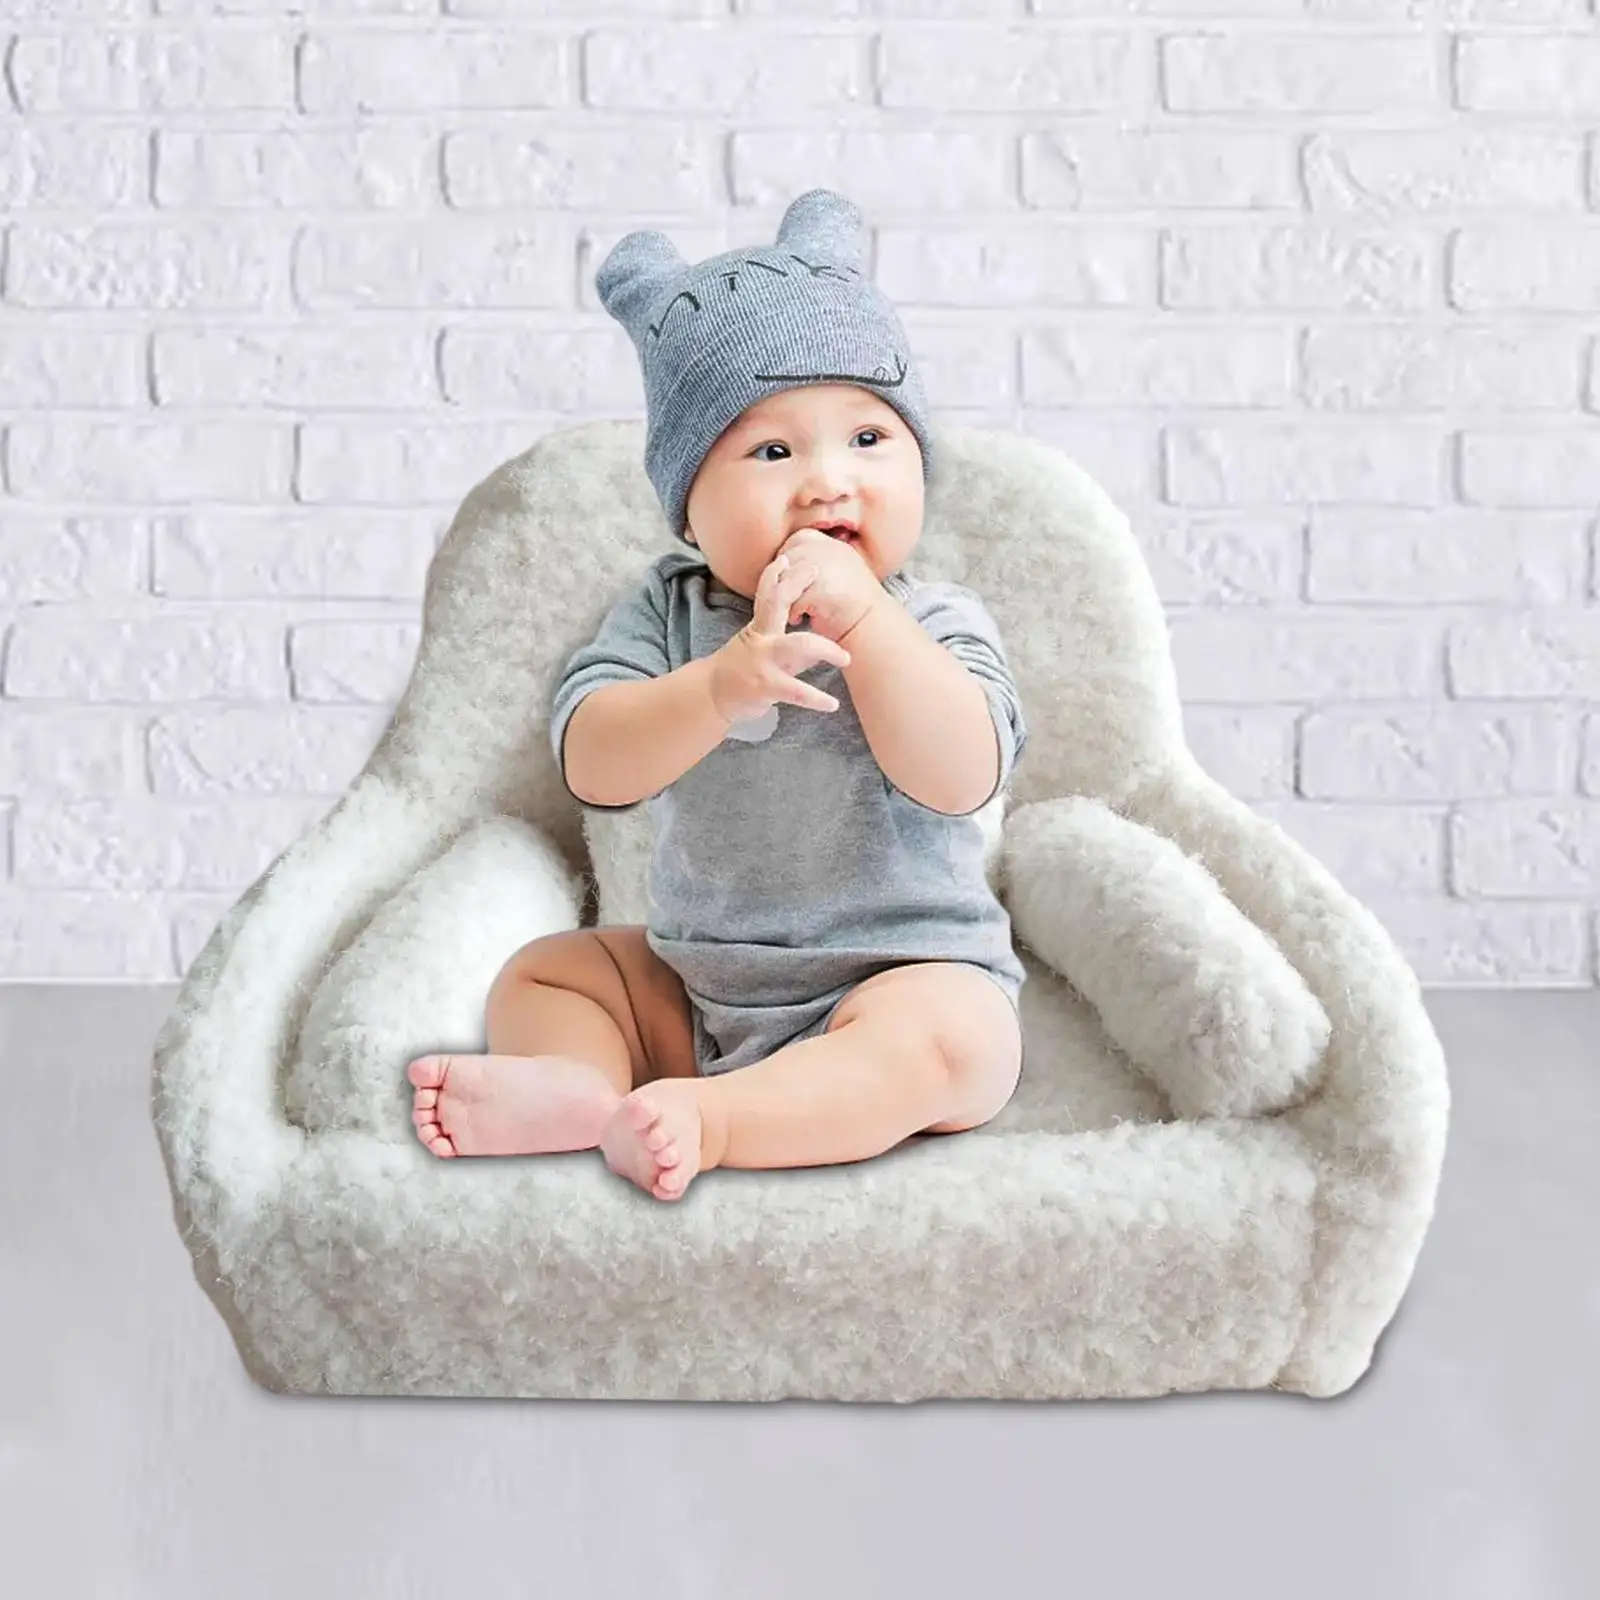 Baby ing Props Baby Posing Sofa Pillow Posing Aid Handmade for ing